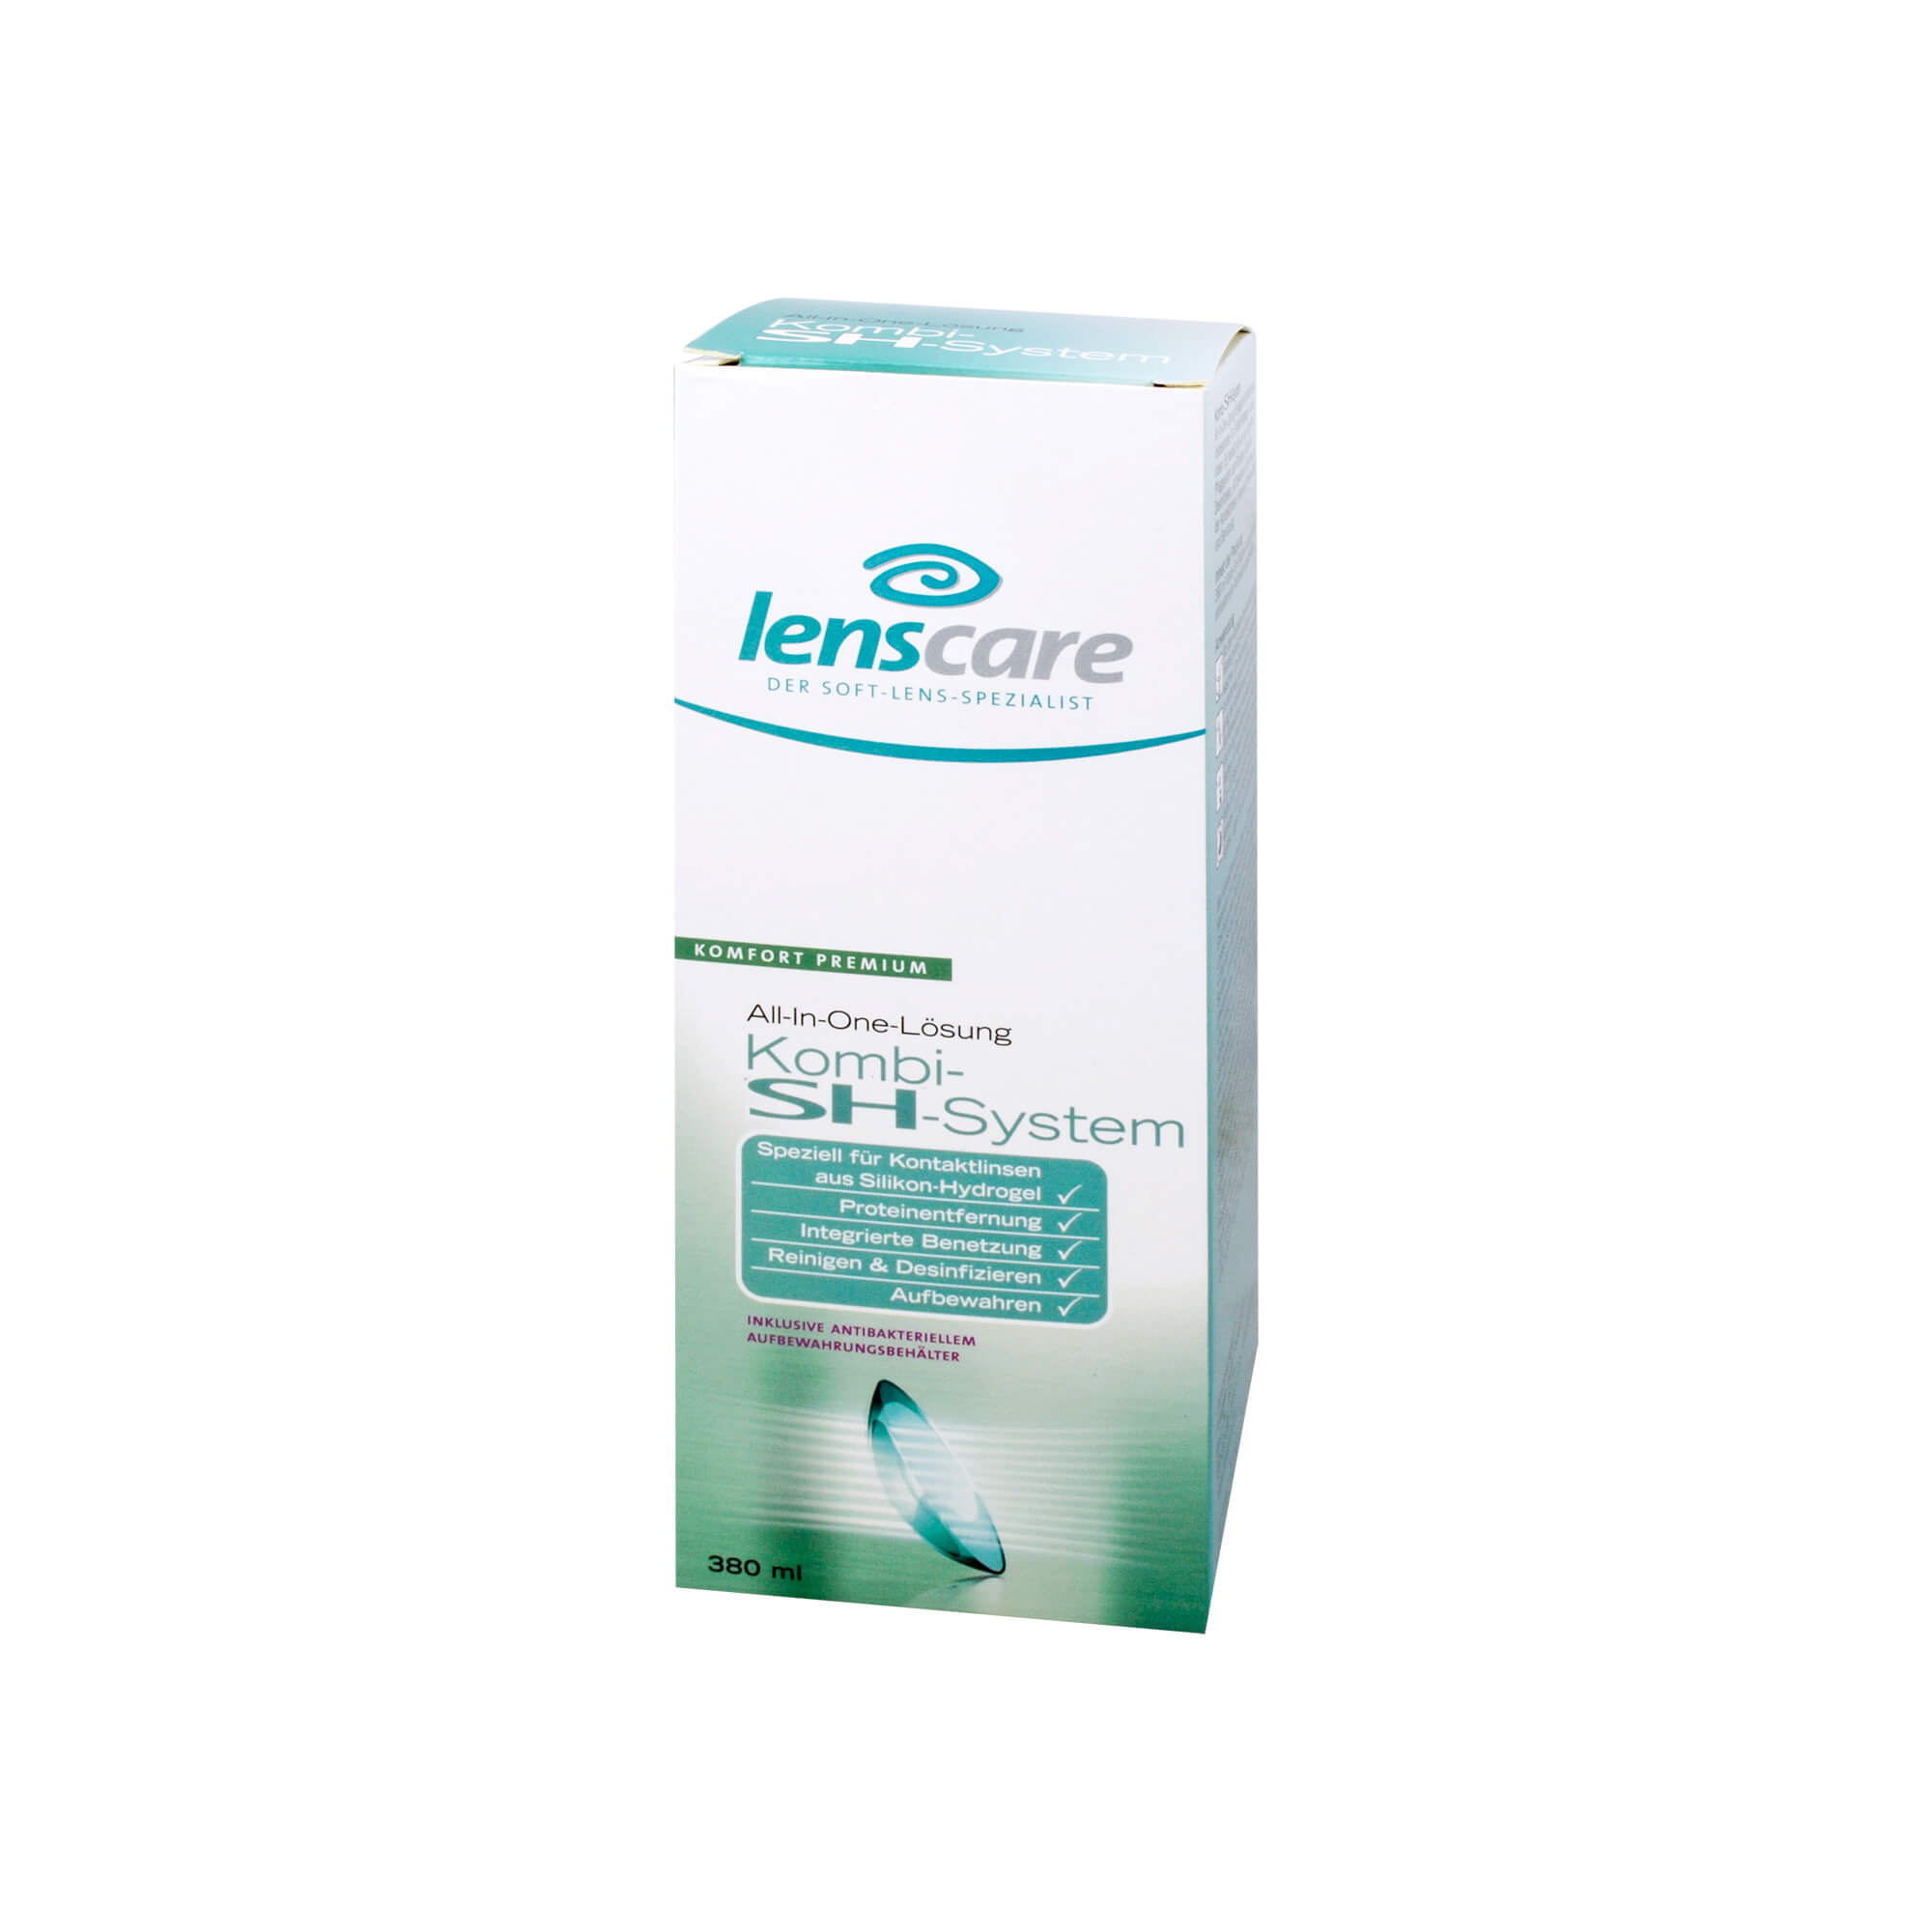 Speziell für Kontaktlinsen aus Silikon-Hydrogel, Proteinentfernung, Integrierte Benetzung, Reinigen, Desinfizieren und Aufbewahren.